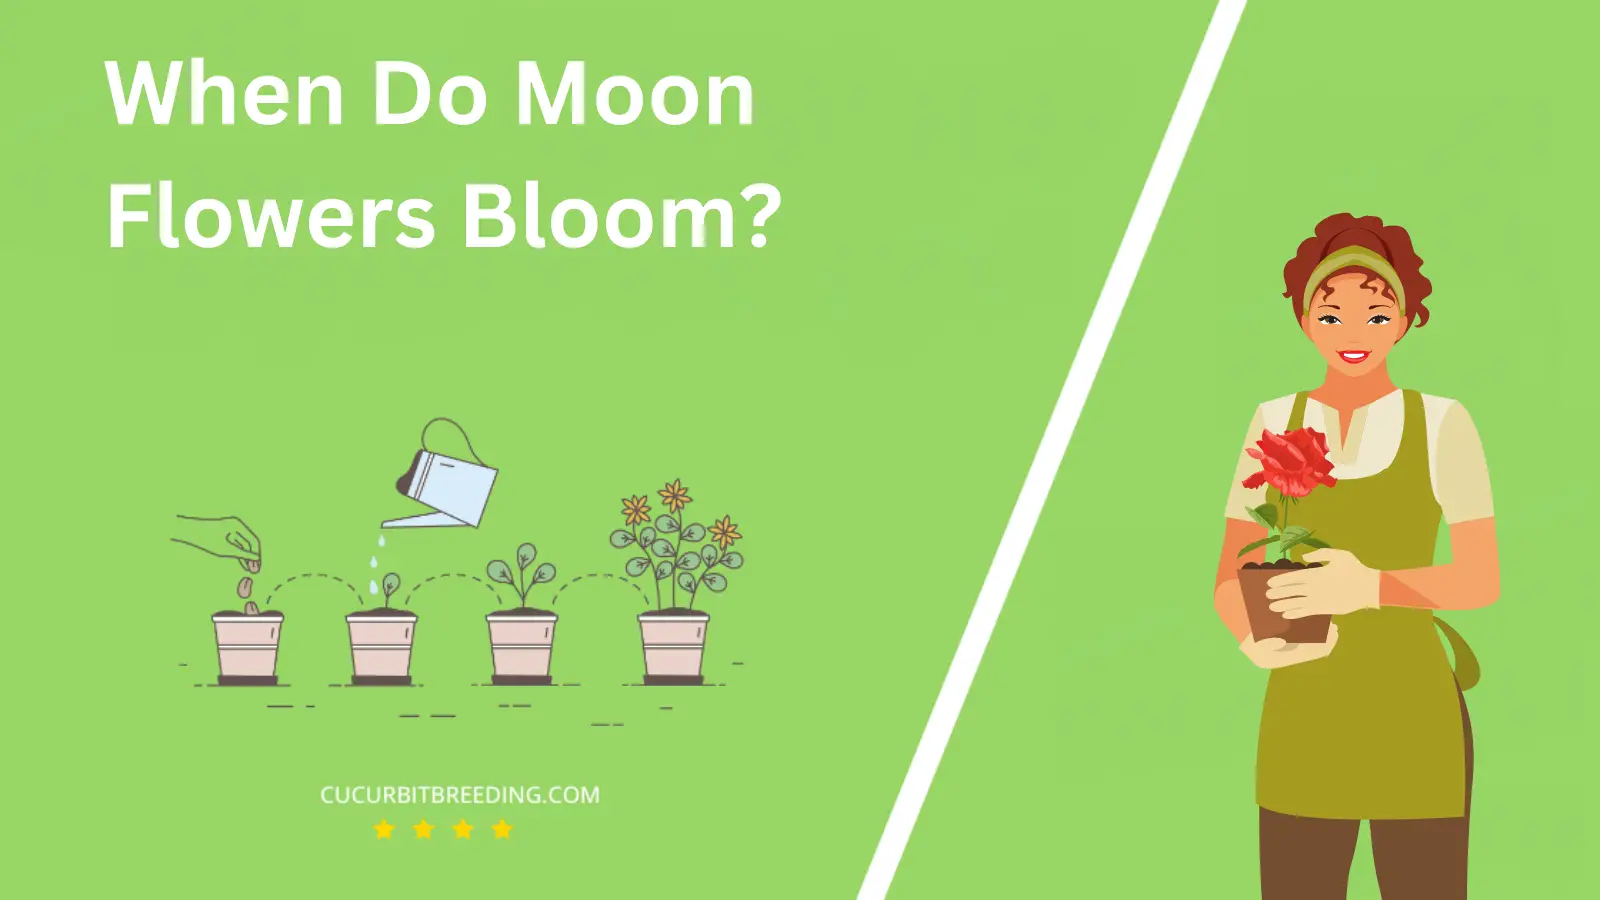 When Do Moon Flowers Bloom?